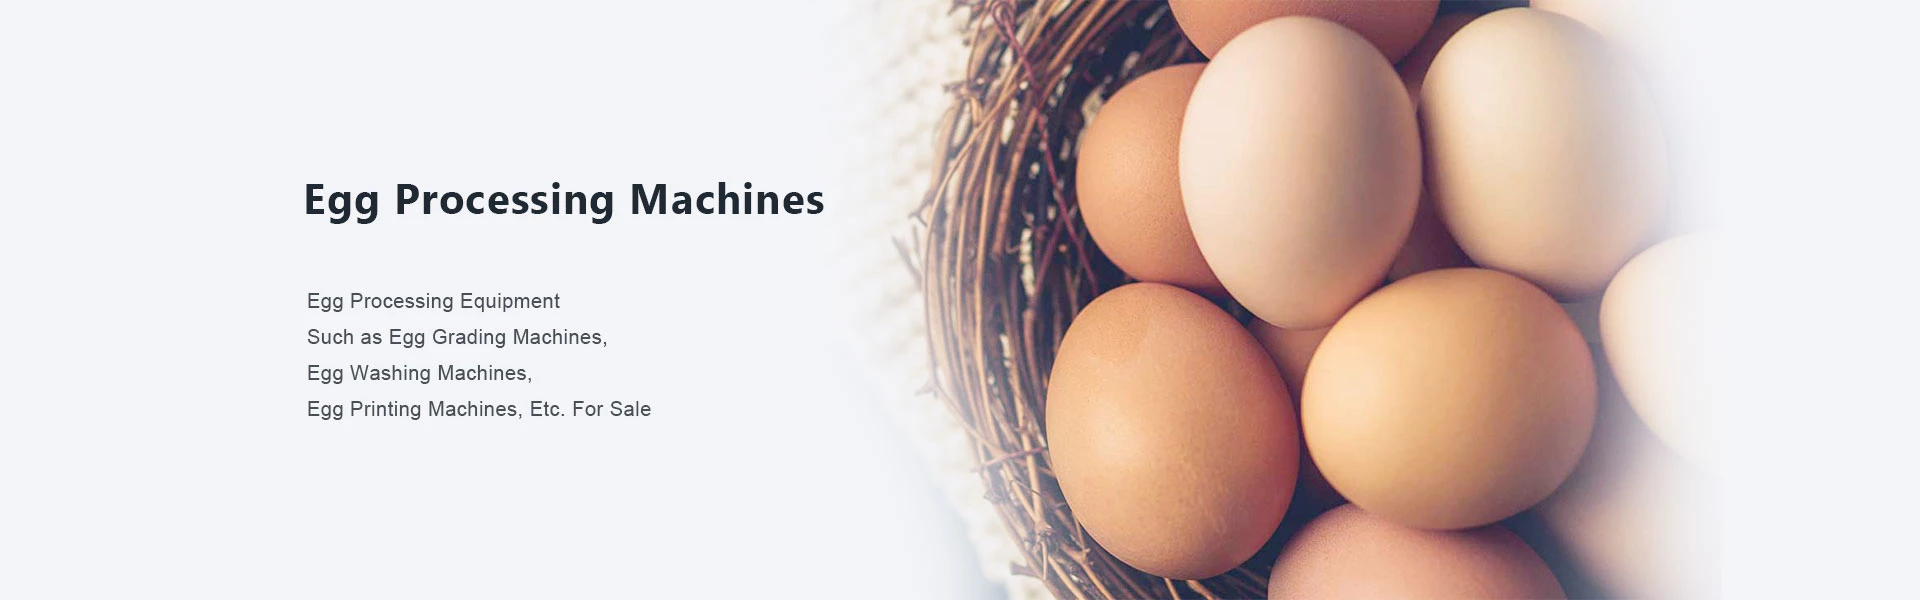 maquinas de huevos